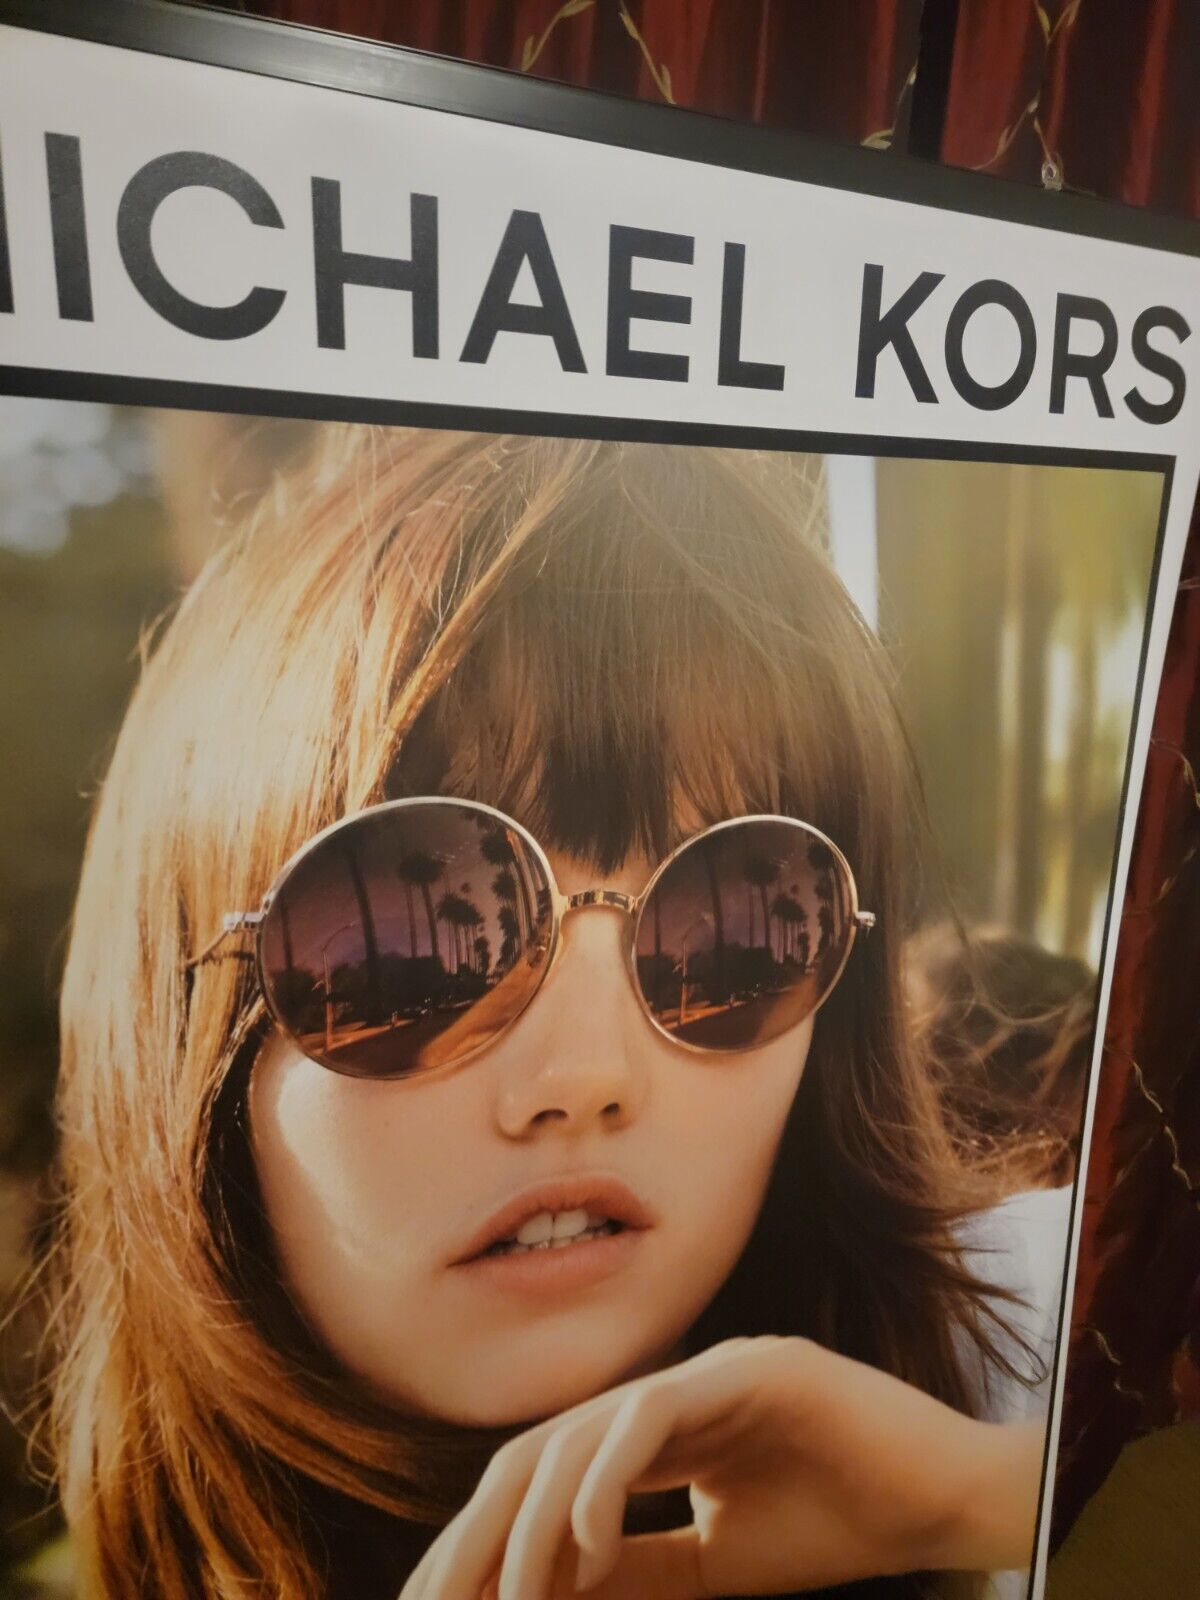 MICHAEL KORS Large Double-Sided Vinyl Store Banner Poster MK Sunglasses 54\